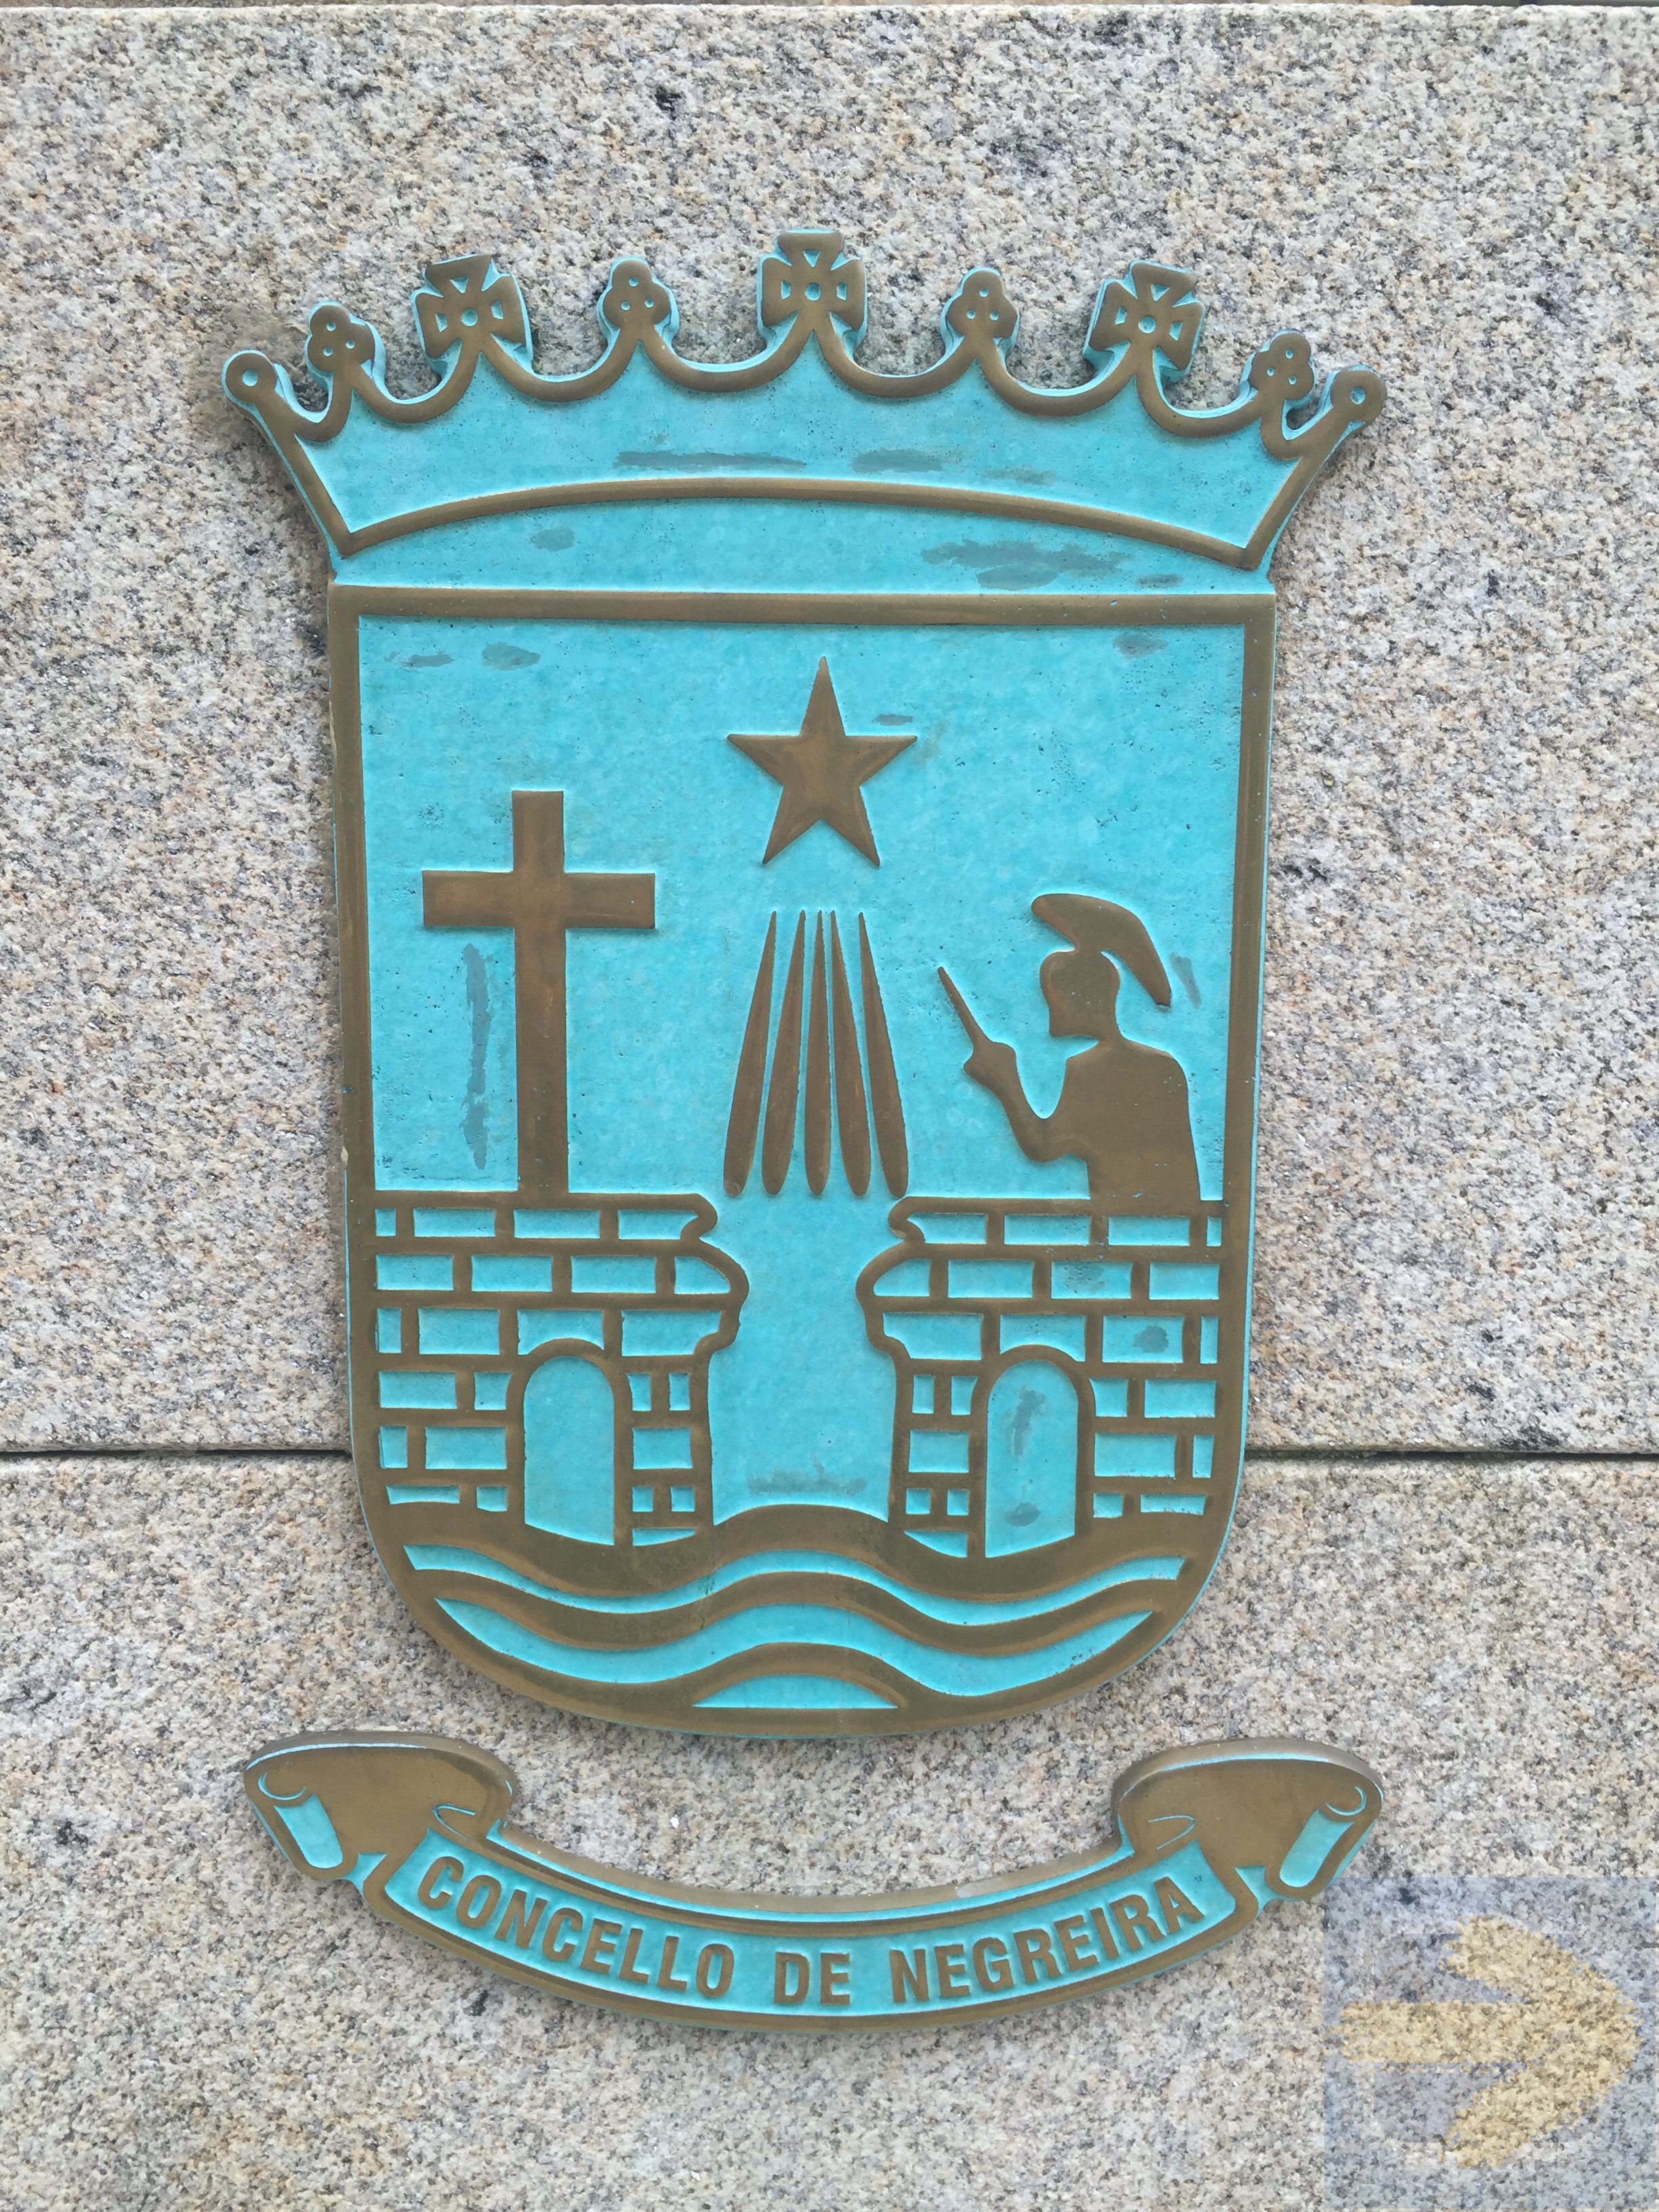 Coat of Arms Negreira